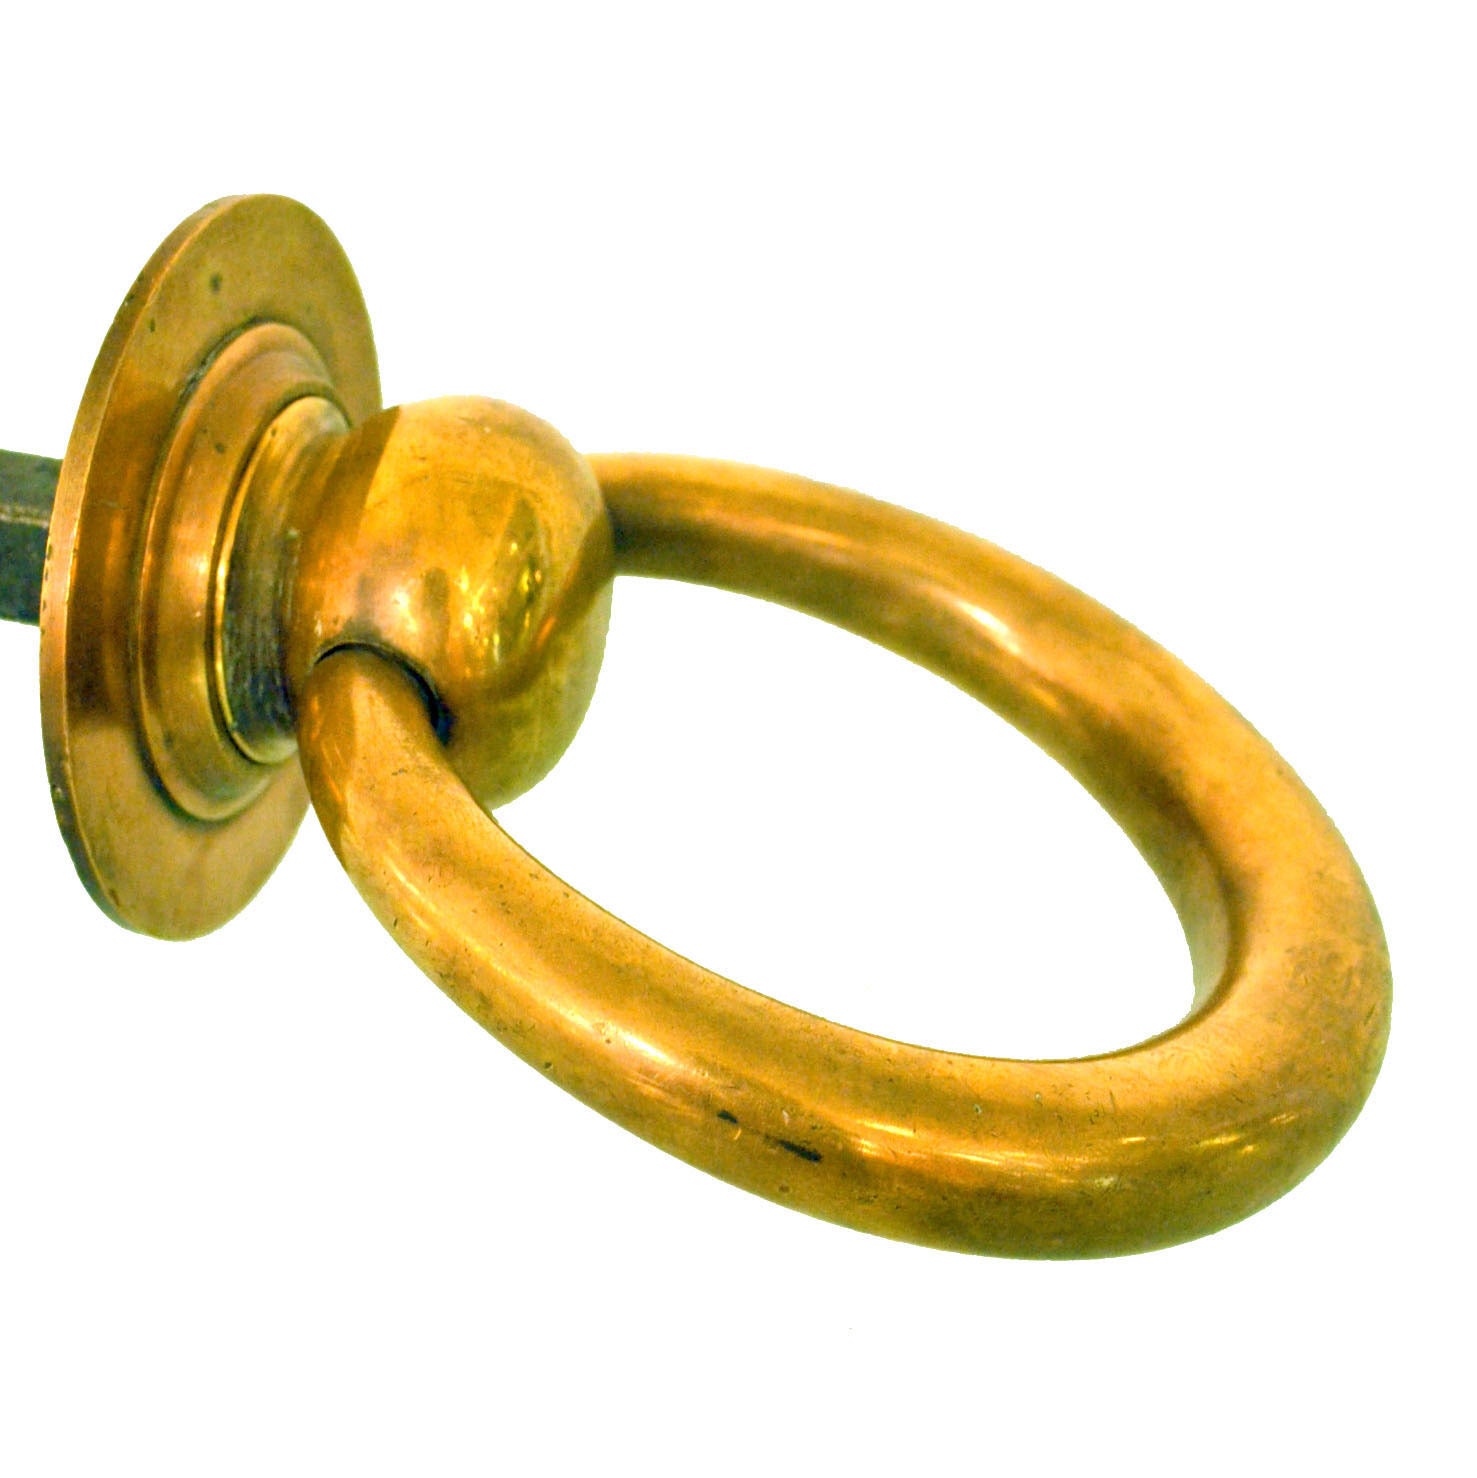 Early 20th century two-sided door knocker and door handle cast in bronze is made in Belgium.